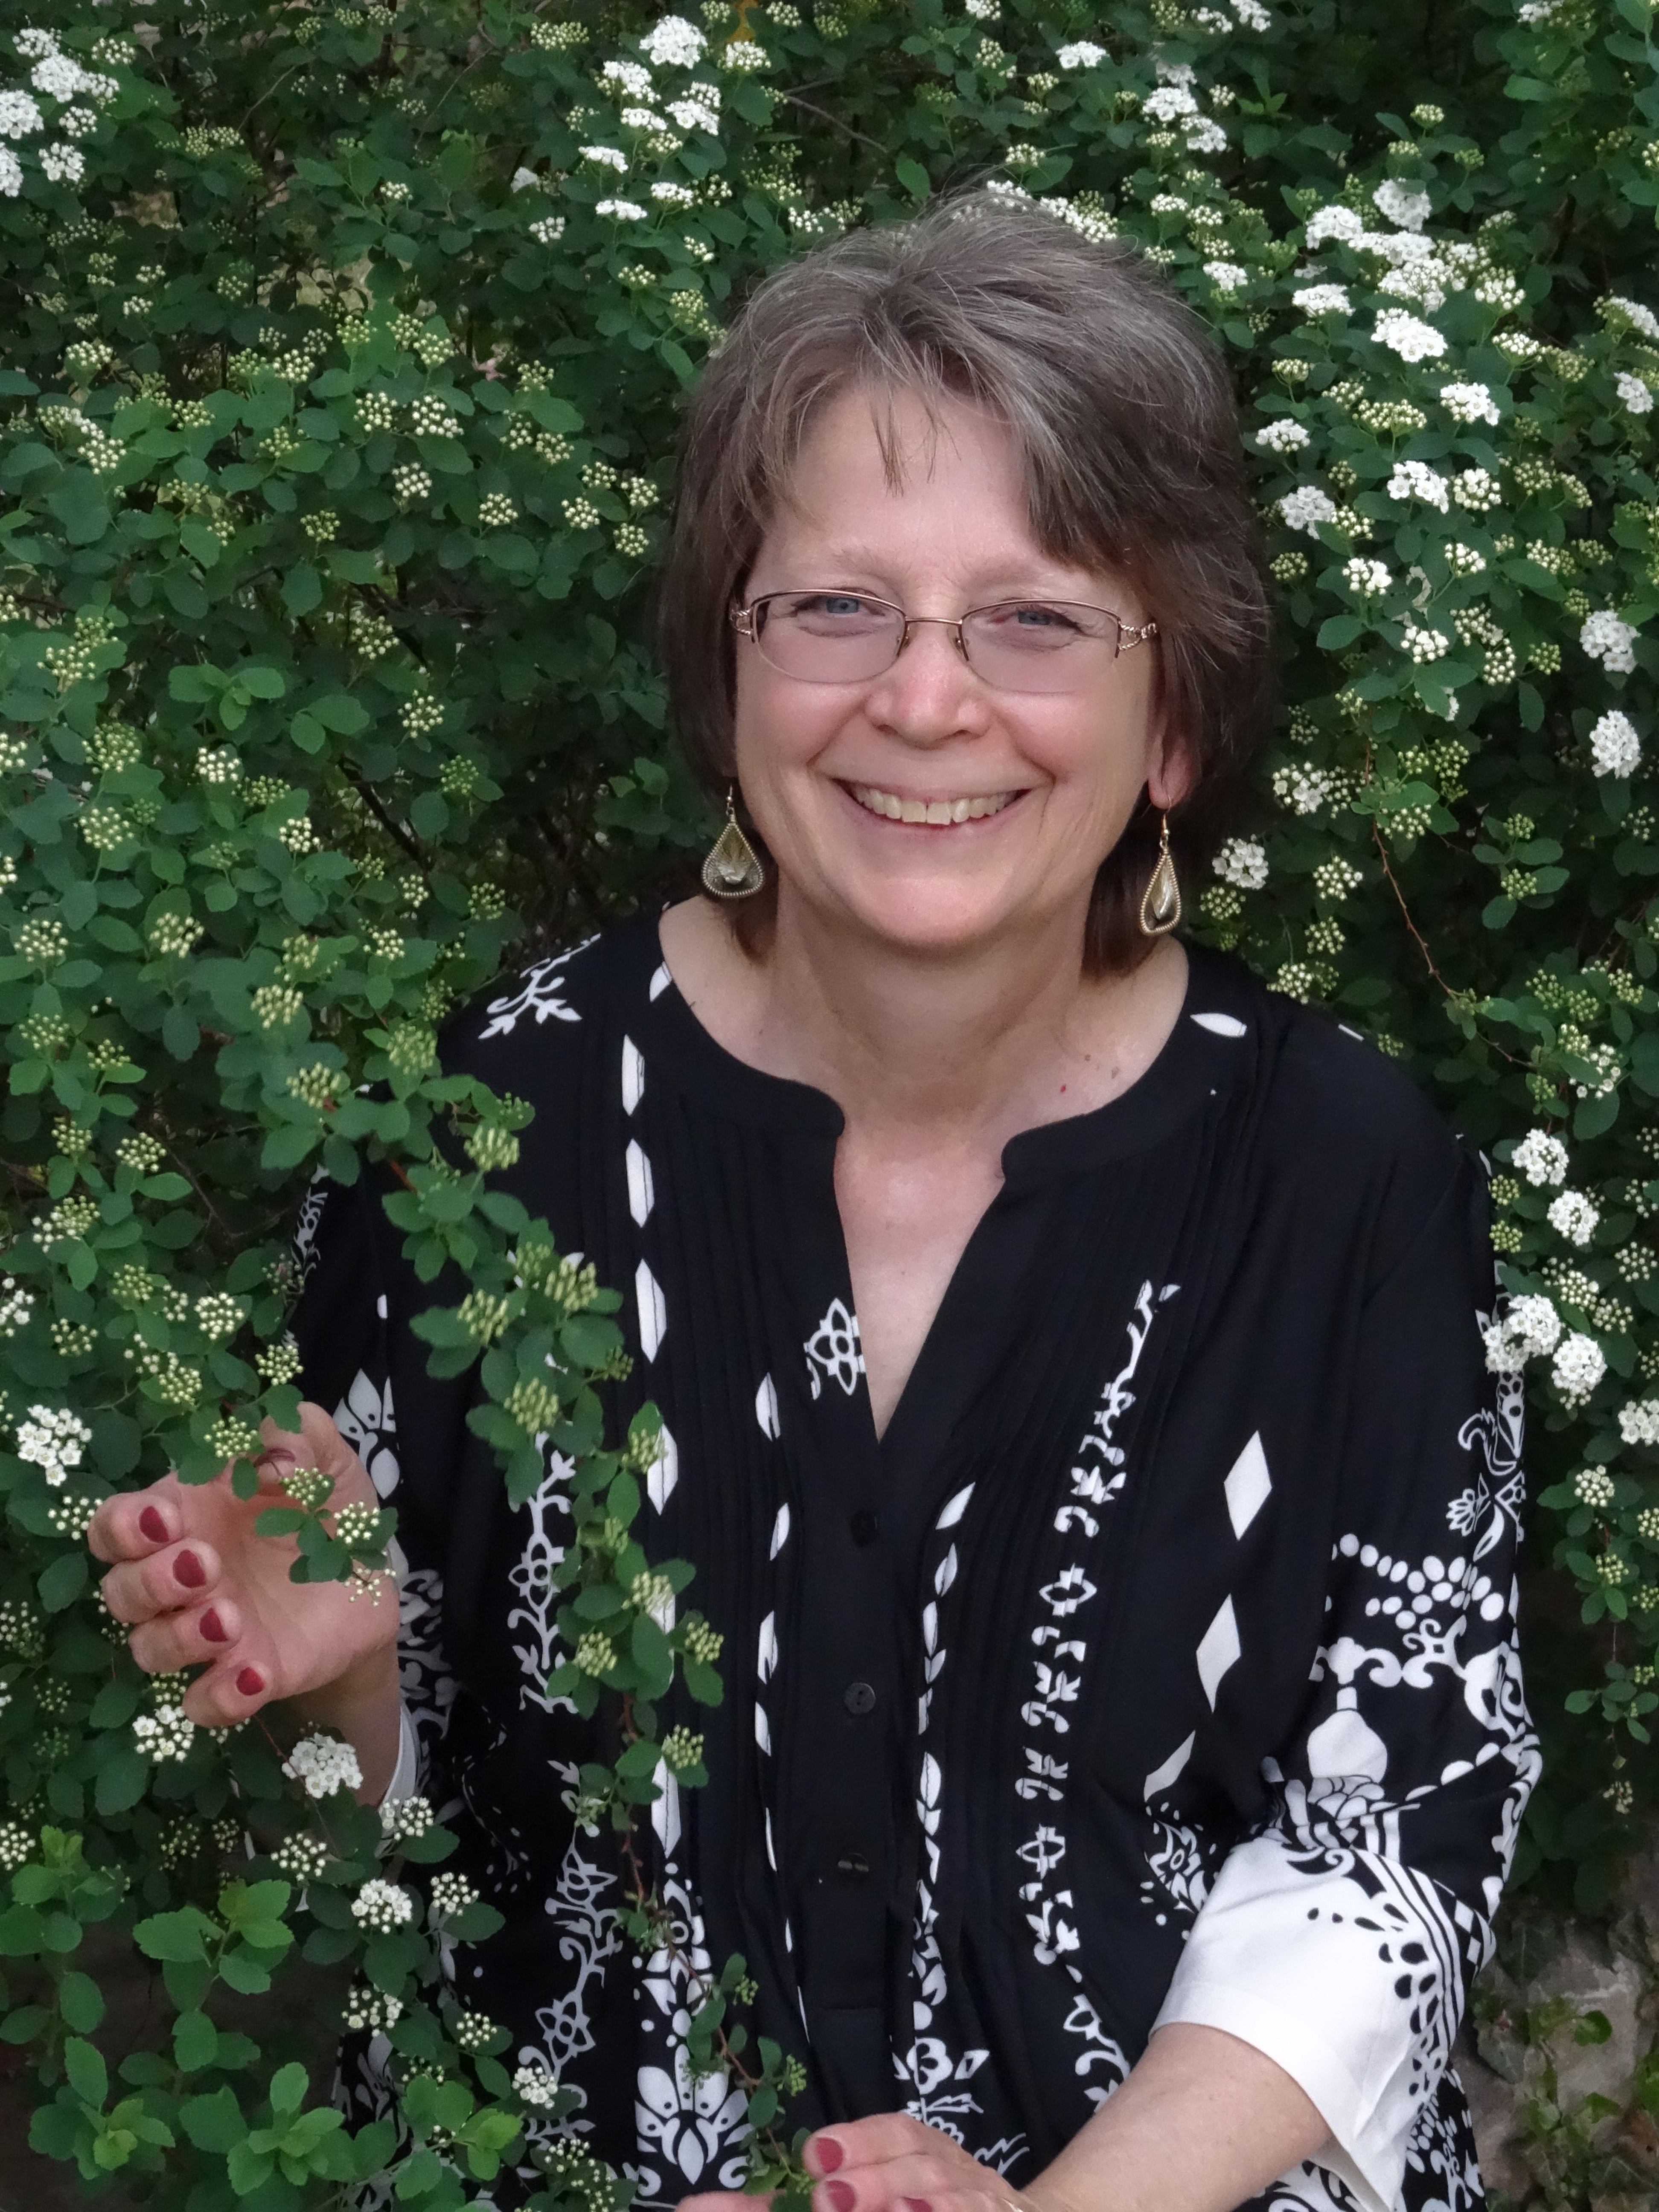 Author Ann Fell